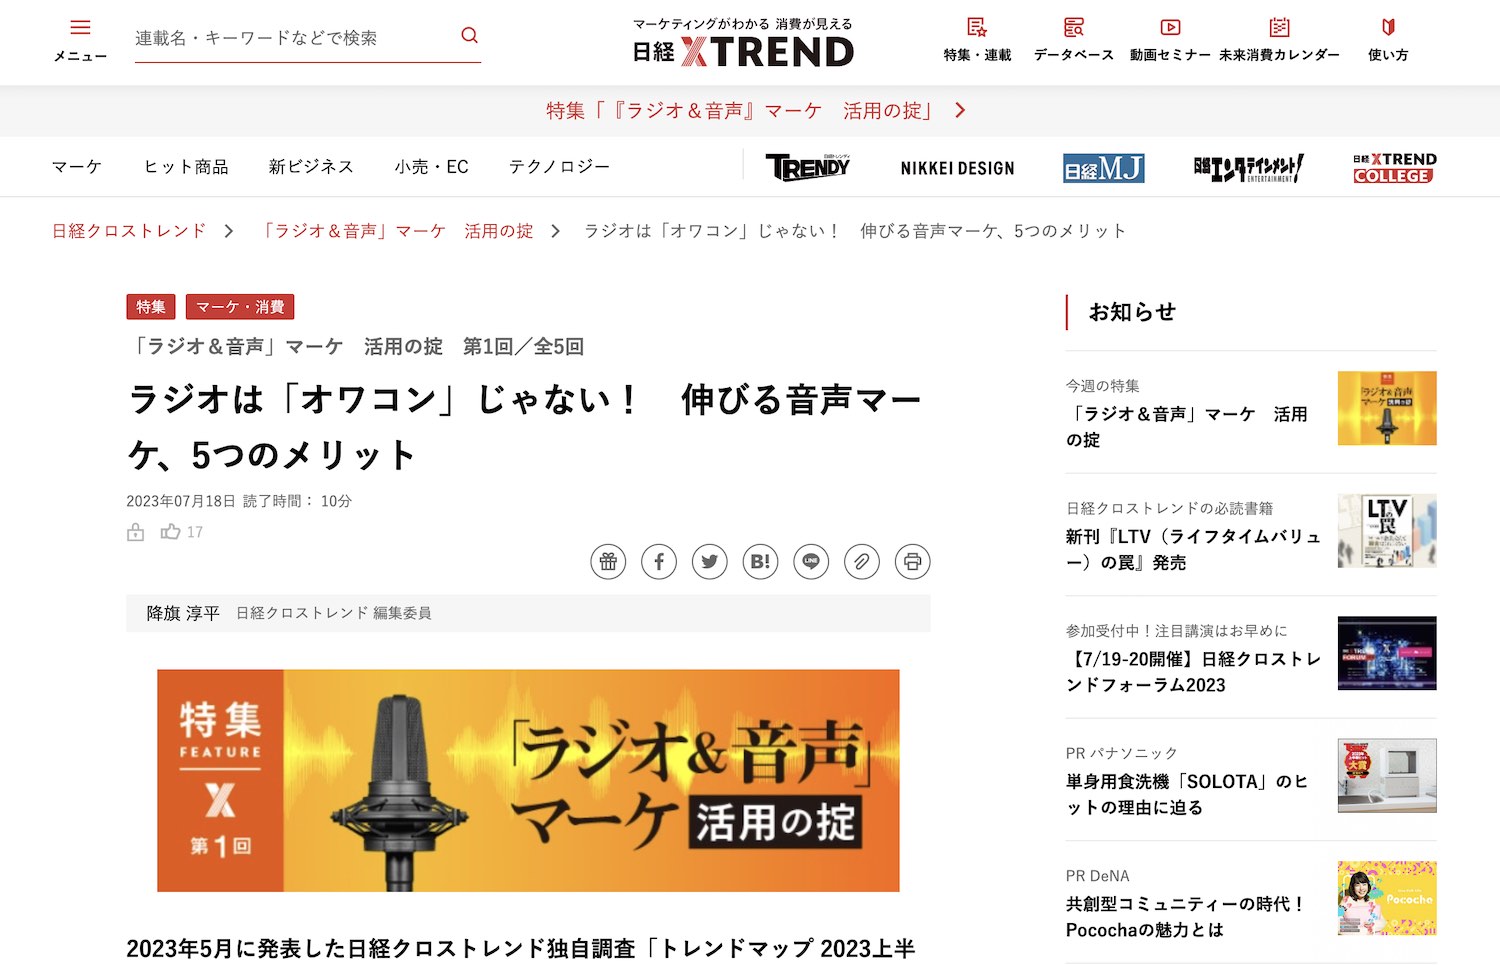 ウェブメディア『日経xTREND（クロストレンド）』の音声マーケティング特集にて代表の八木が取材されました